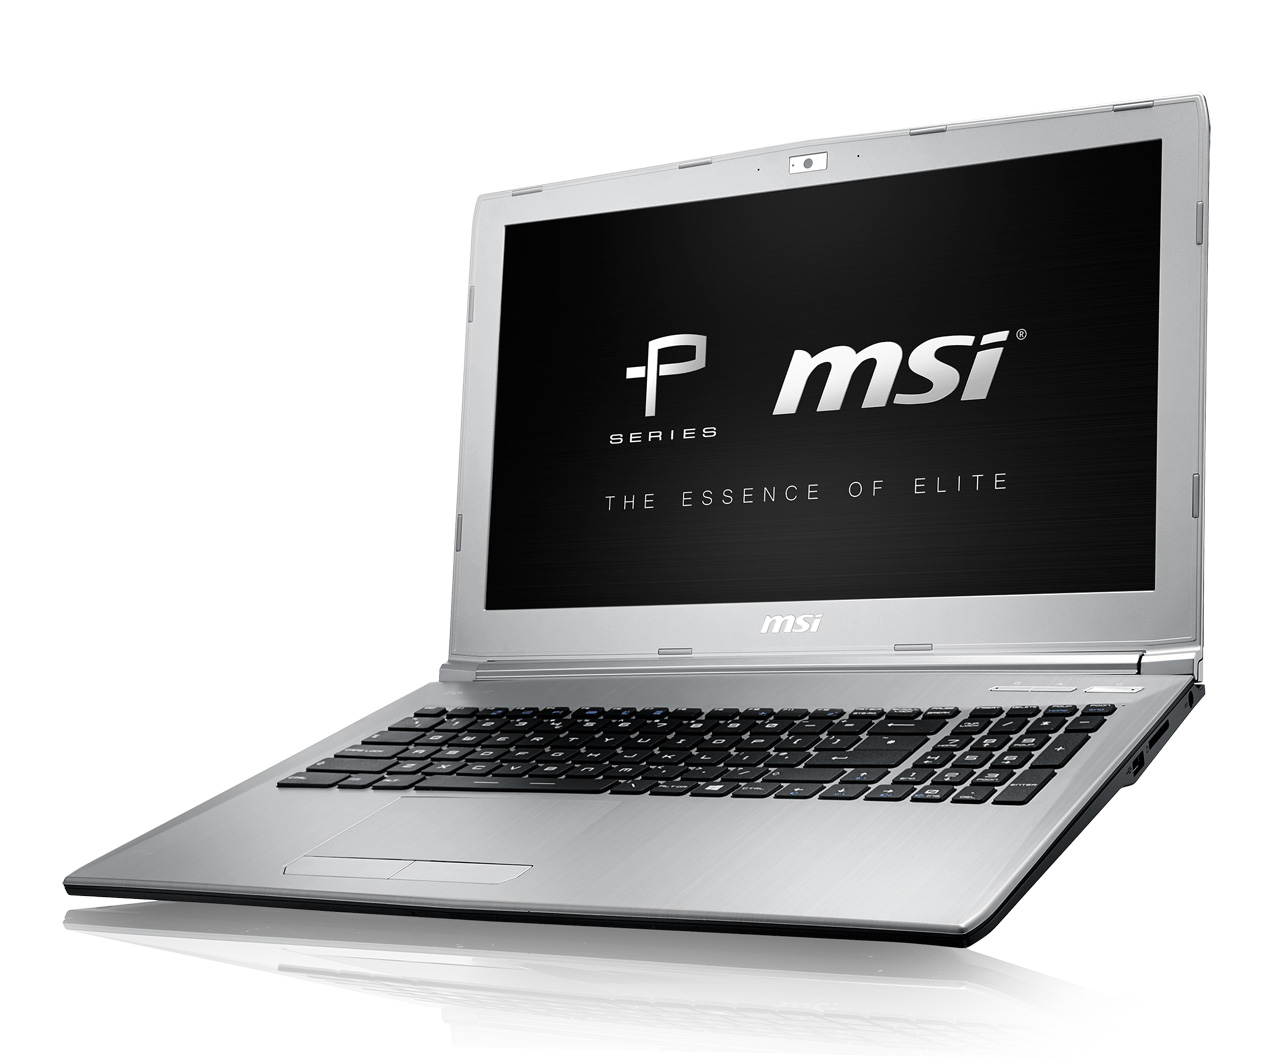 180320 윈도우 10 노트북 MSI PL62 출시 사은품 혜택도 받으세요 (1) .jpg